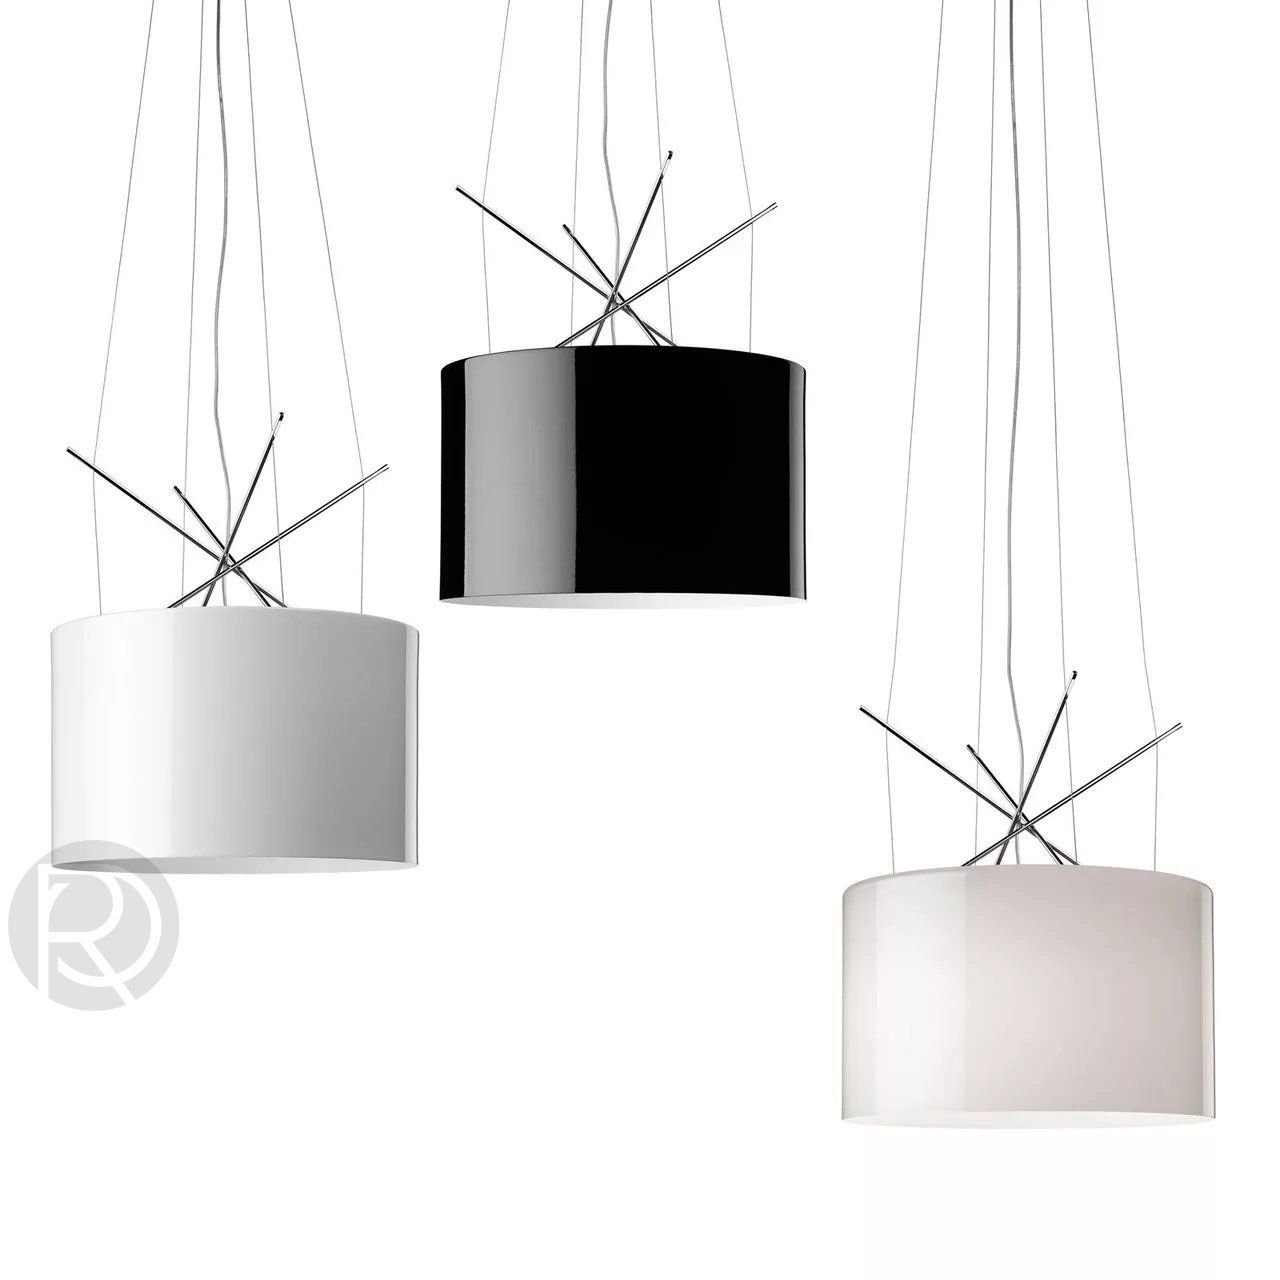 Hanging lamp RAY by Romatti